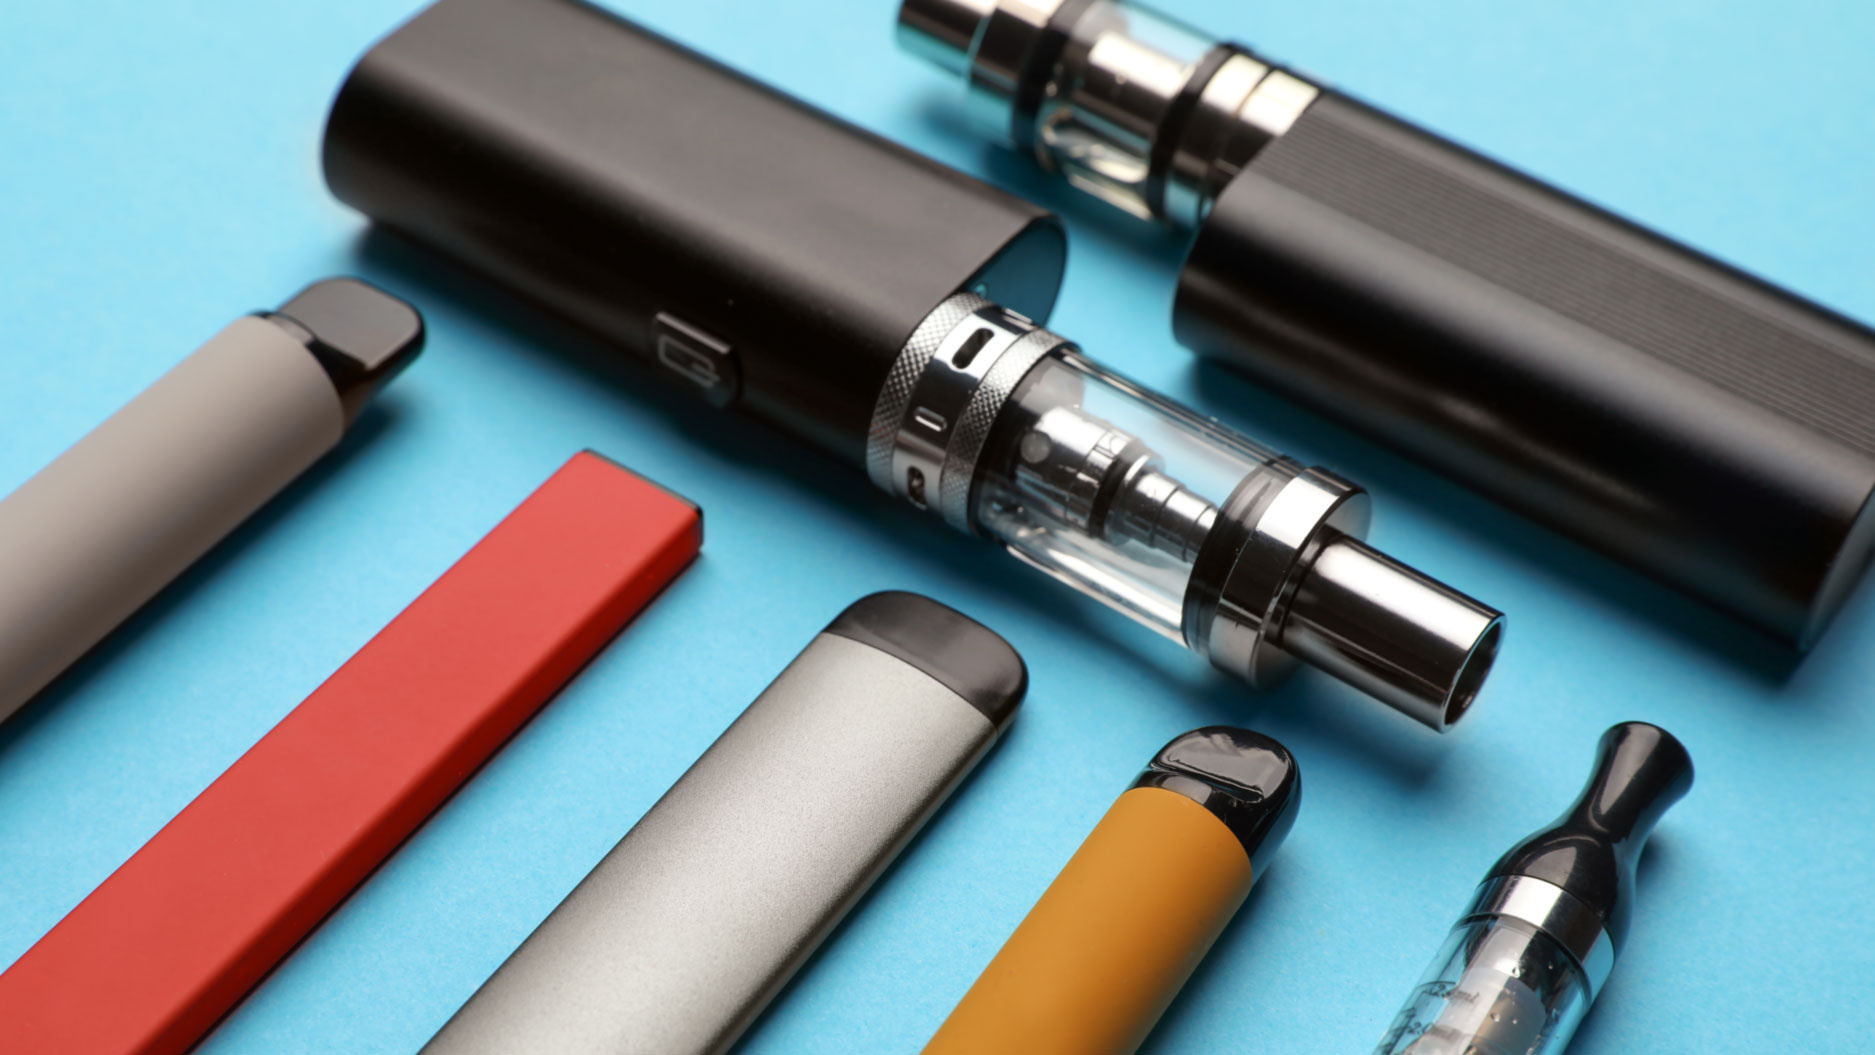 Welche E-Zigaretten Modelle gibt es? - InnoCigs